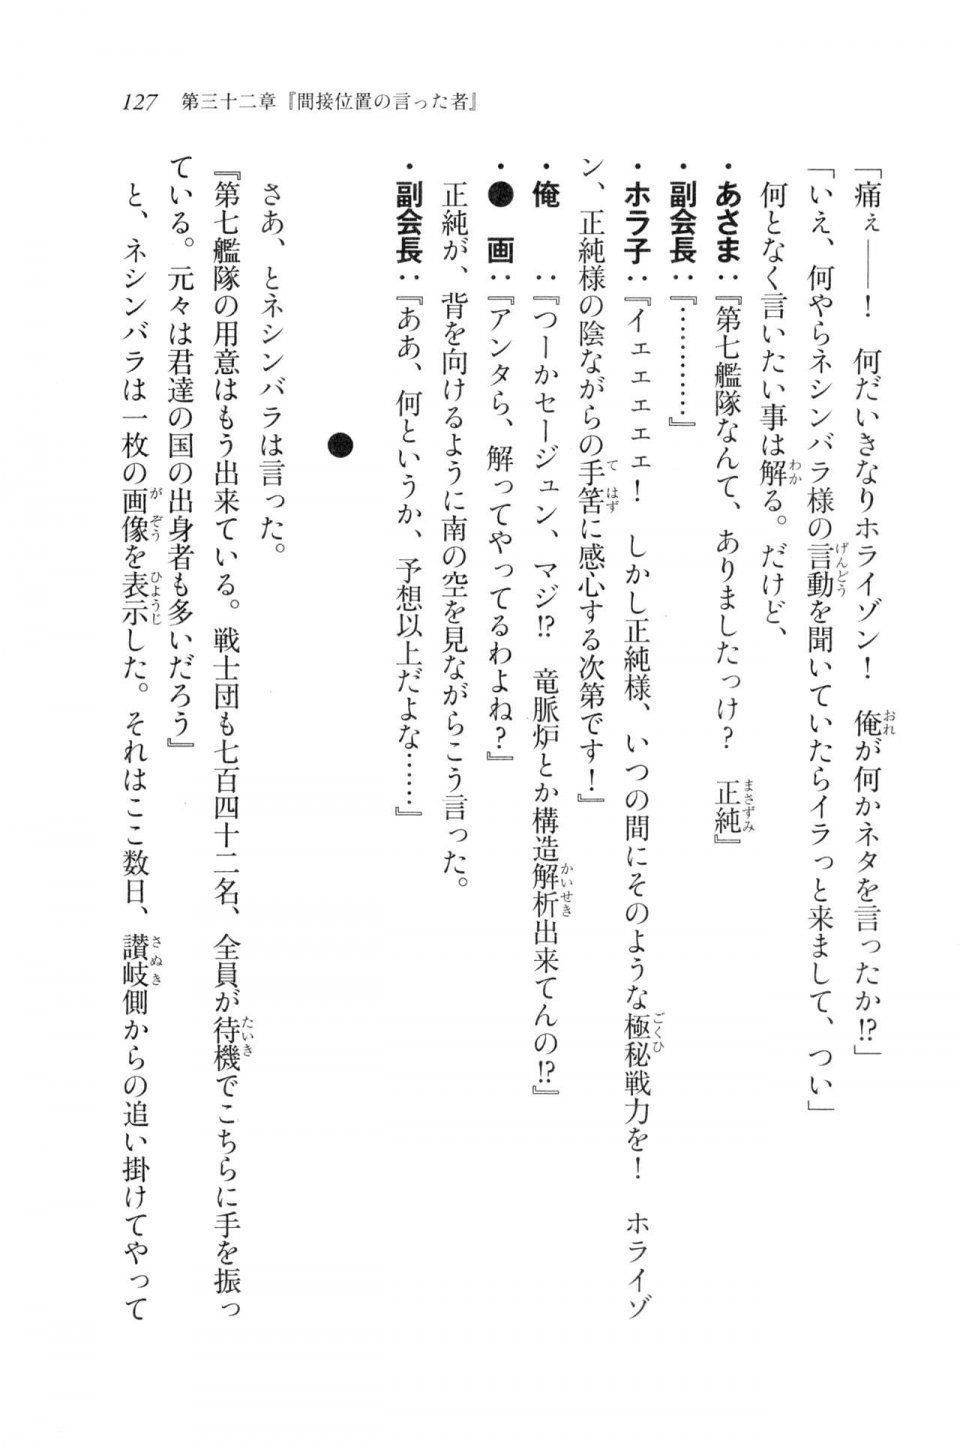 Kyoukai Senjou no Horizon LN Vol 20(8B) - Photo #127